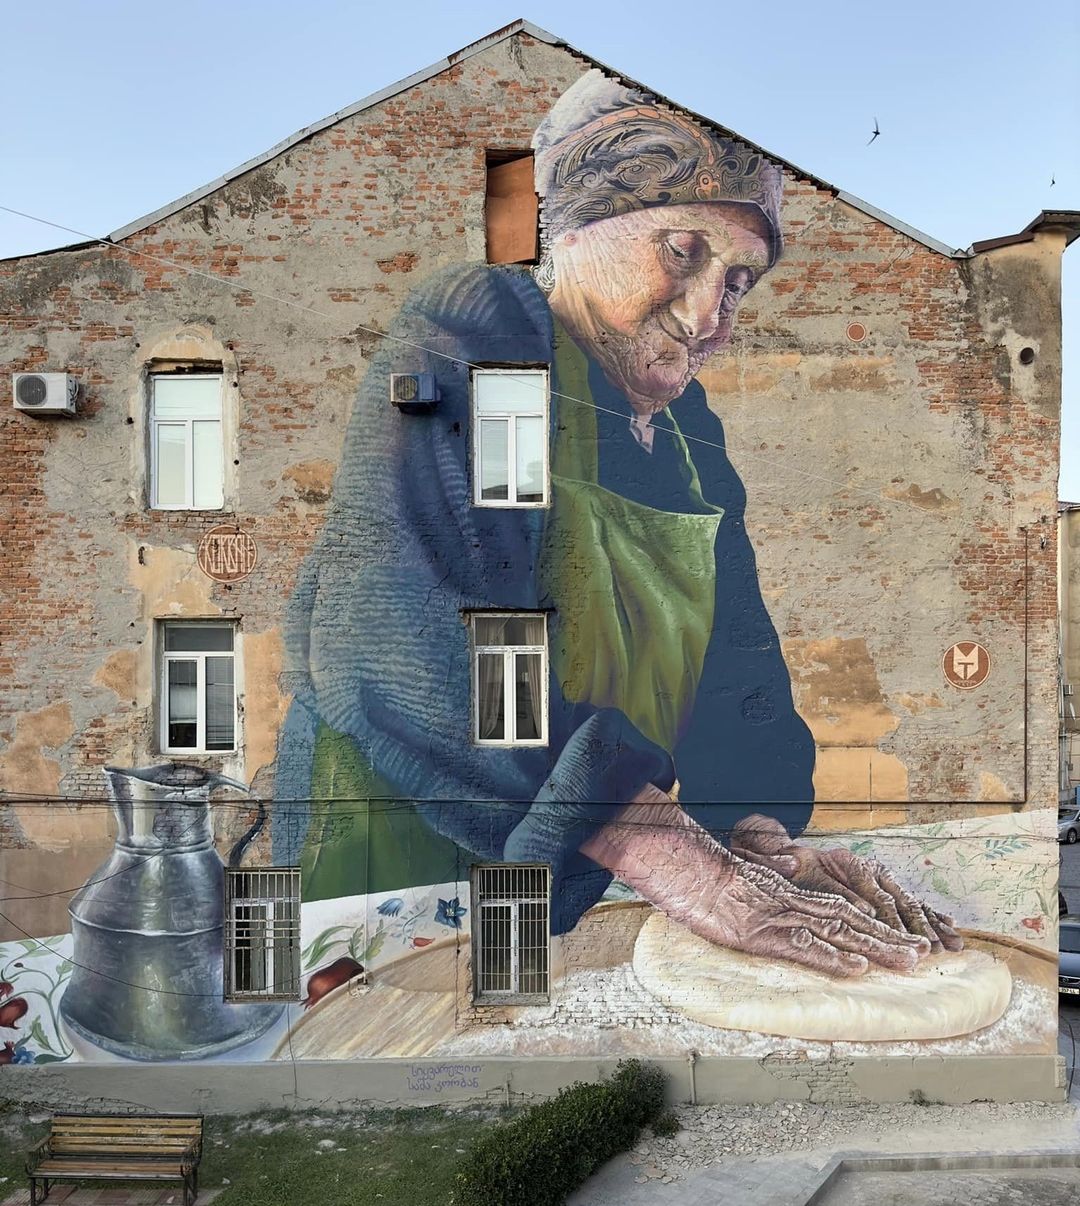 Художник Саша Корбан. Фреска находится на улице Варламишвили 4 в Кутаиси, Грузия, для Tbilisi Mural Fest. Фото Анны Качеишвили